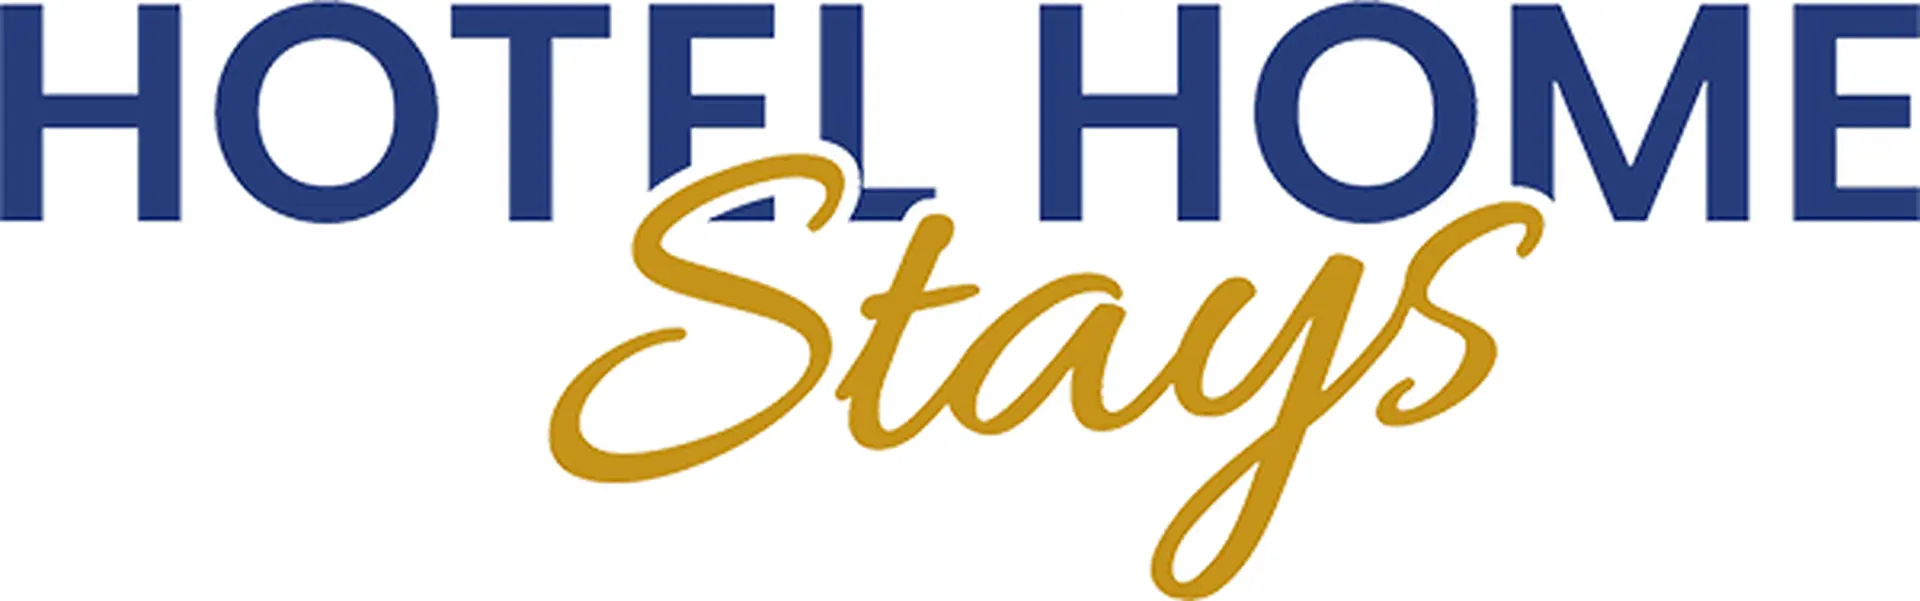 hotelhomestays logo